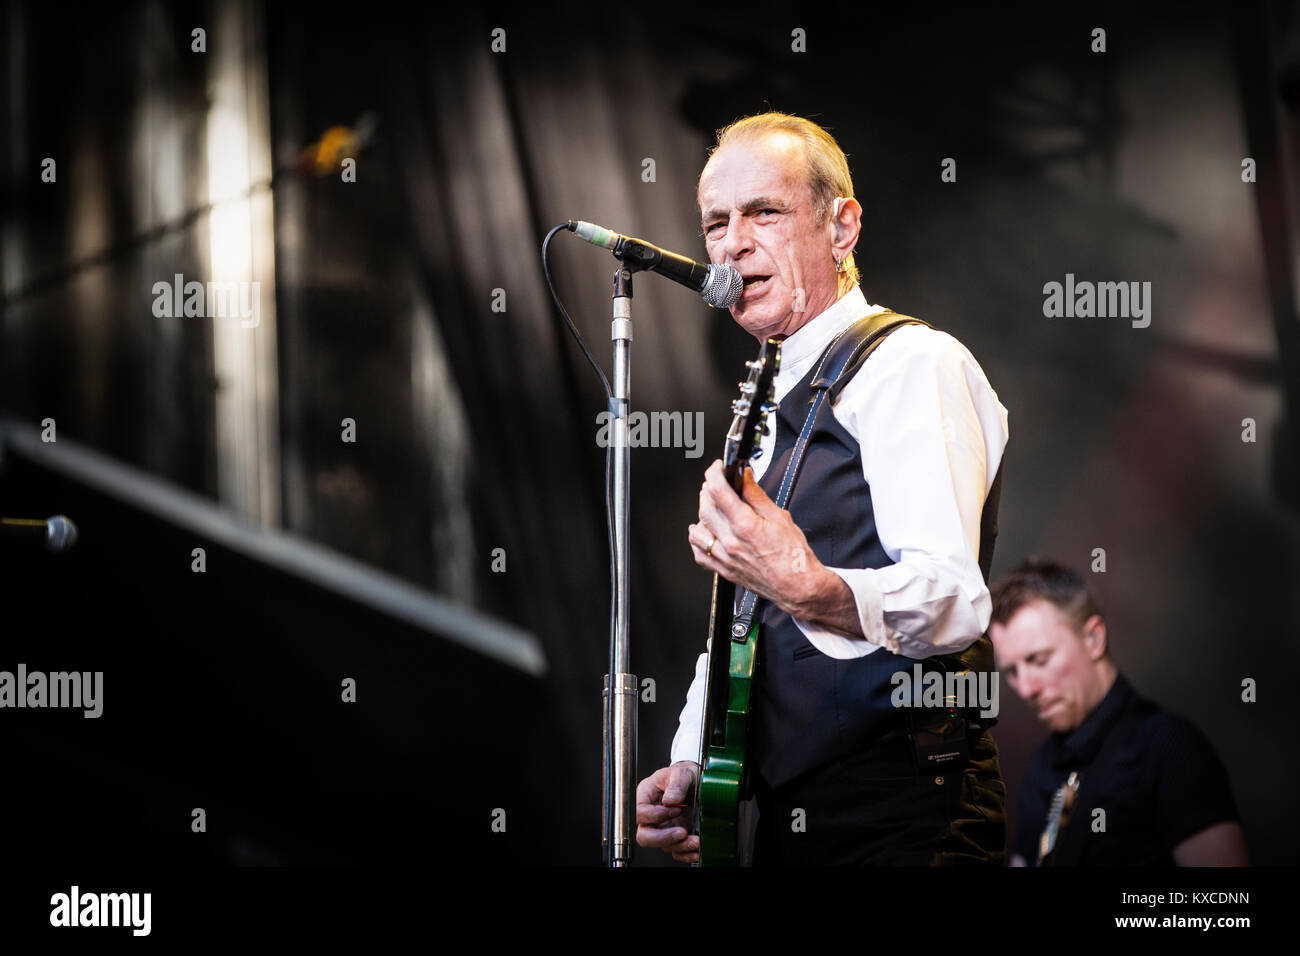 Dänemark, Skanderborg - August 10, 2017. Die englische Rockband Status Quo führt ein Live Konzert während der dänischen Musik Festival SmukFest 2017. Hier Sänger, Songwriter und Musiker Francis Rossi ist live auf der Bühne gesehen. Stockfoto